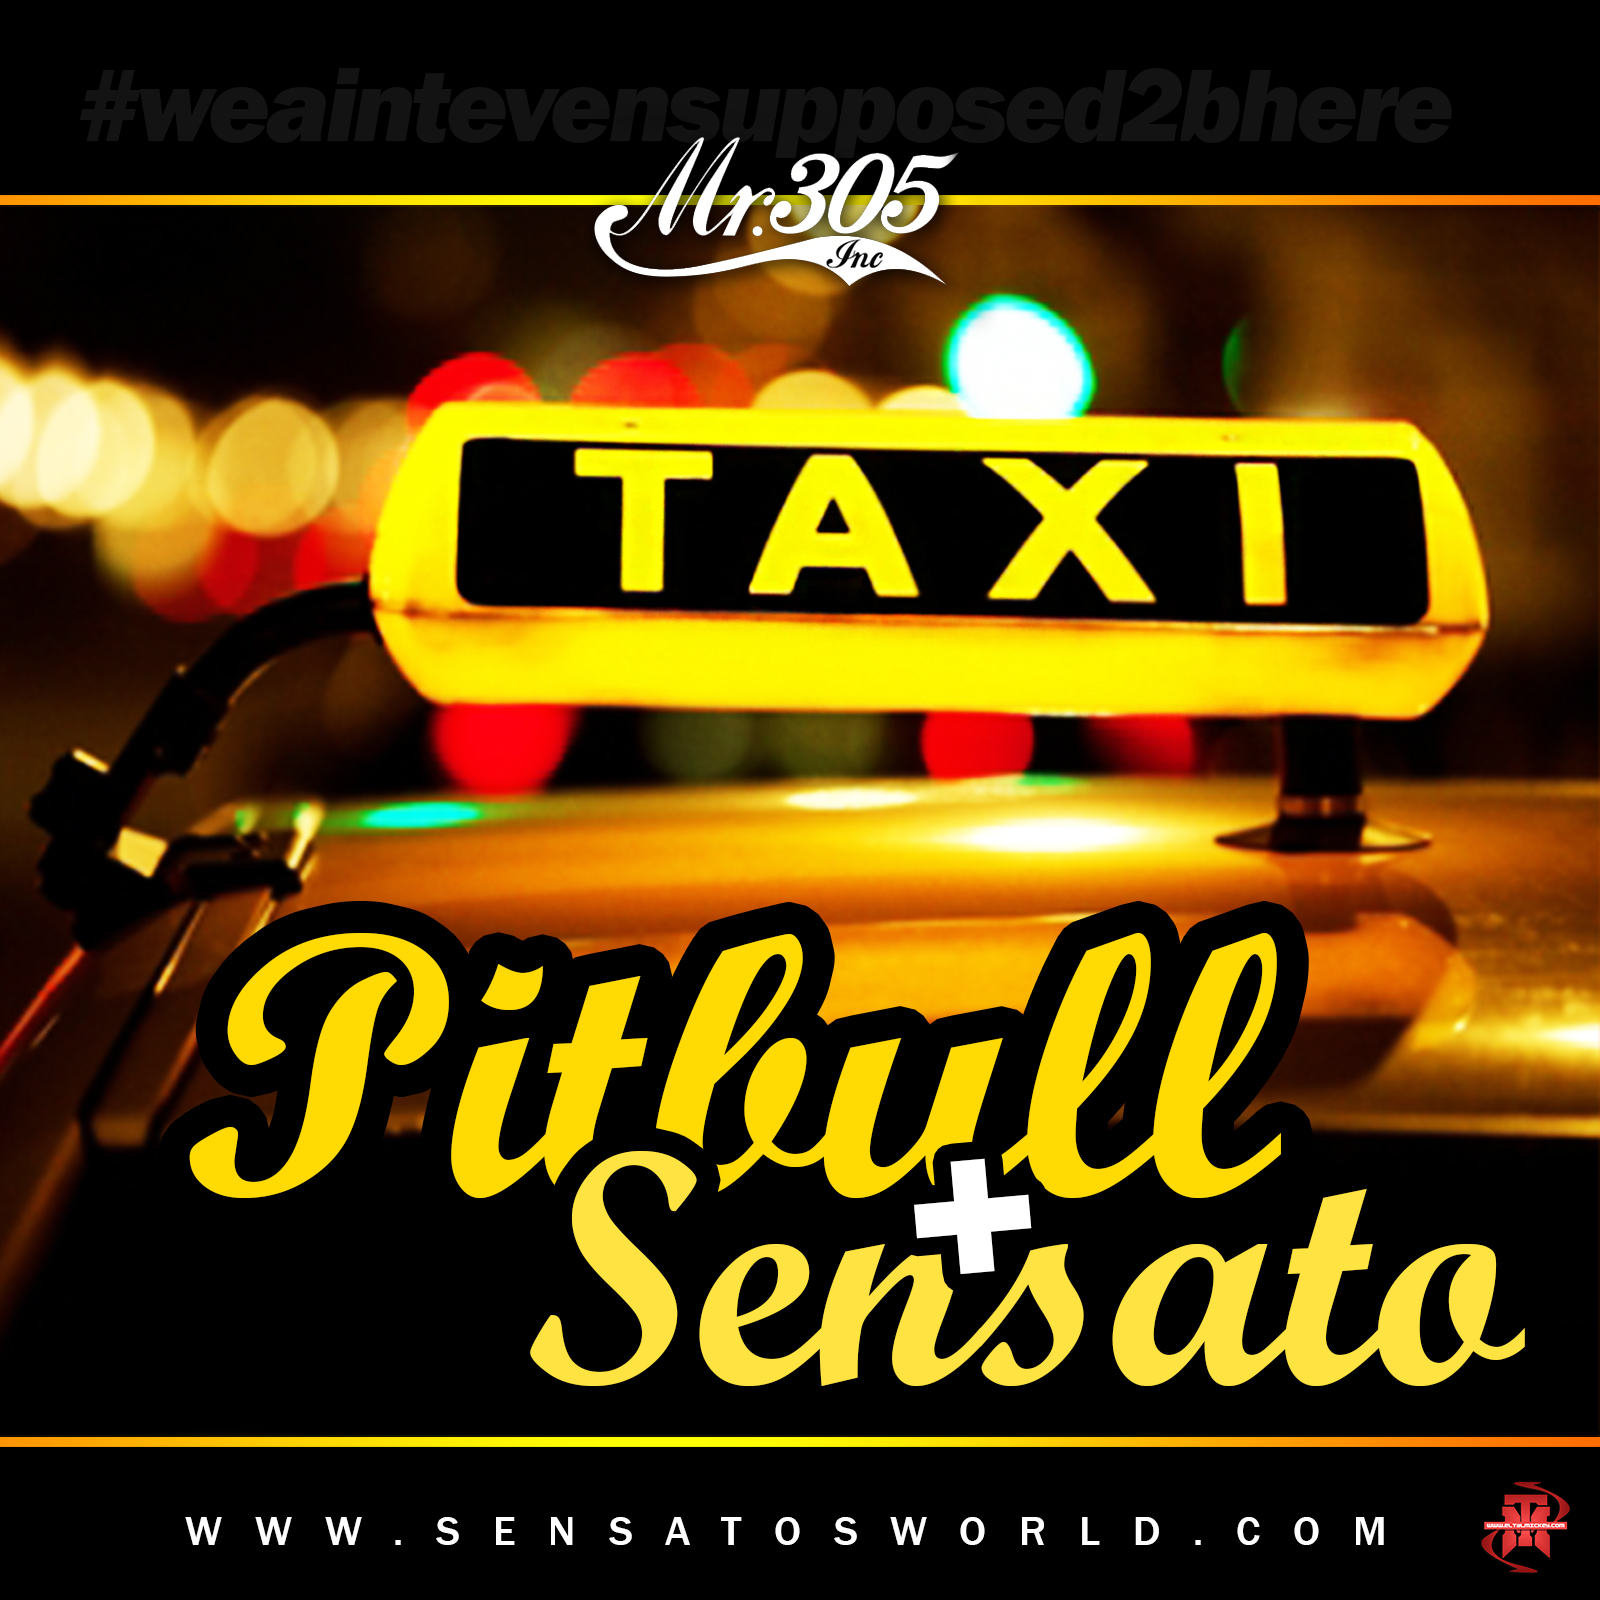 Taxi - Pitbull ft. Sensato